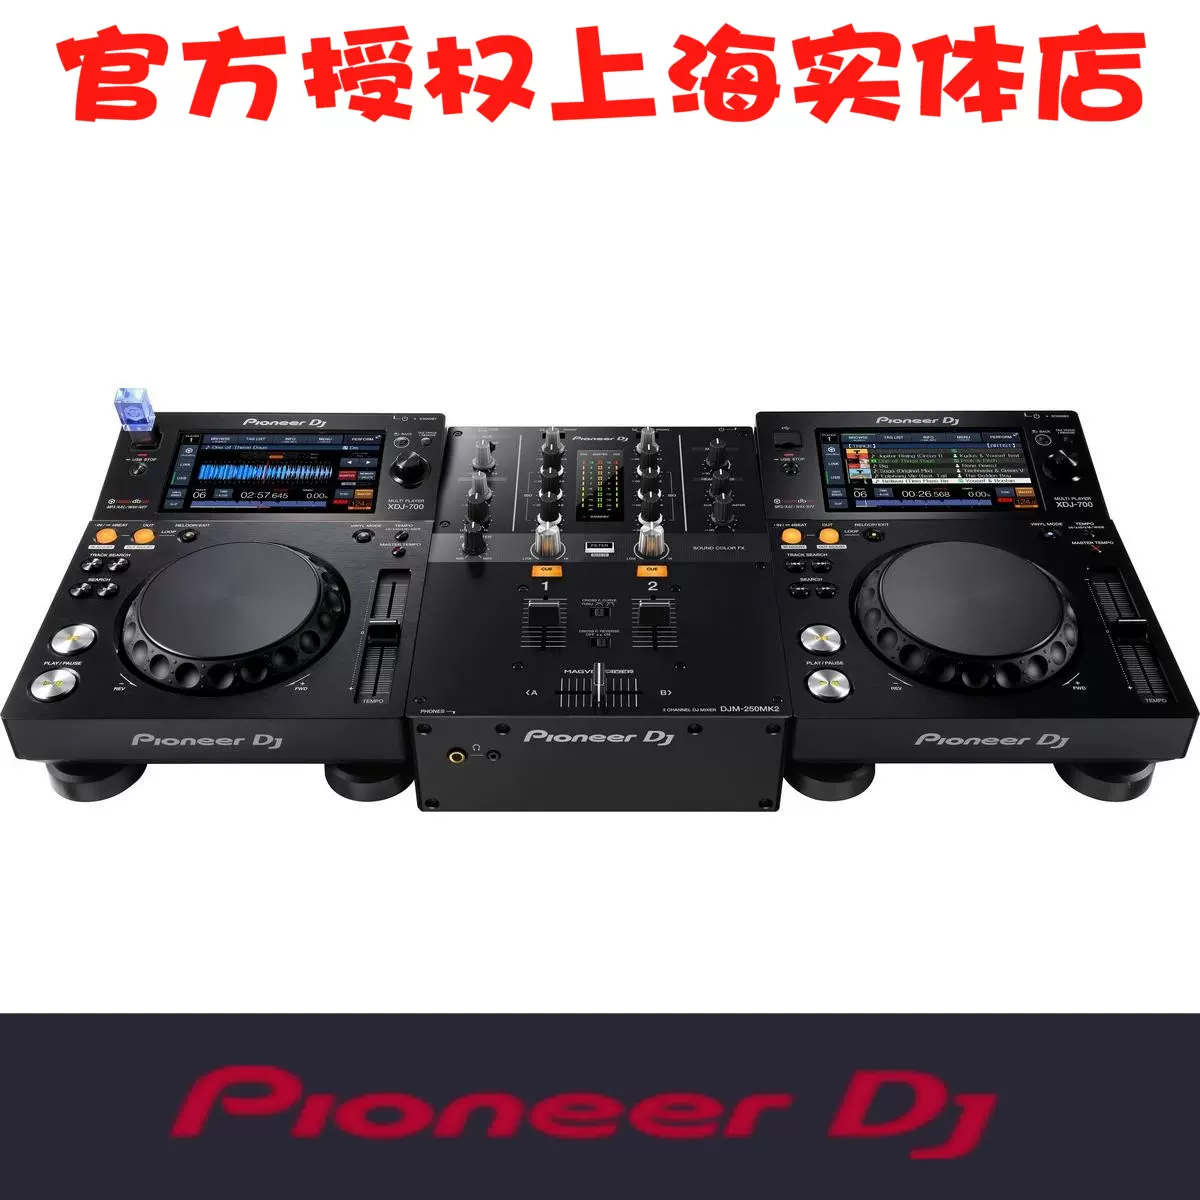 Pioneer先锋XDJ-700x2+DJM450混音台套装set组合dj打碟机